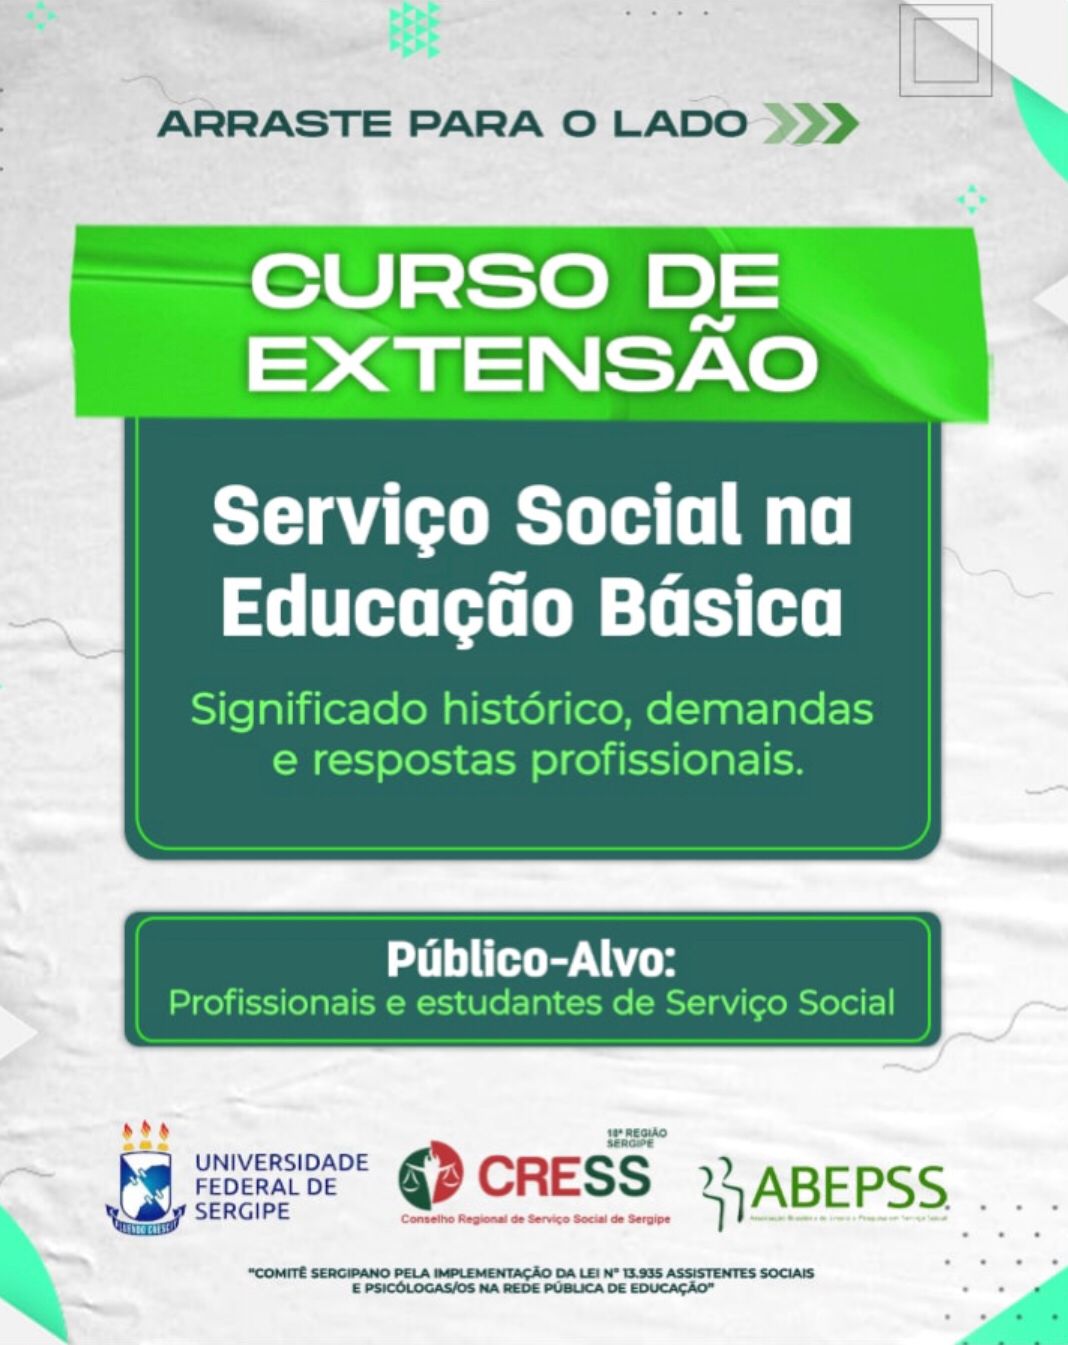 CURSO DE EXTENSÃO: SERVIÇO SOCIAL NA EDUCAÇÃO BÁSICA – Significado histórico, demandas e respostas profissionais